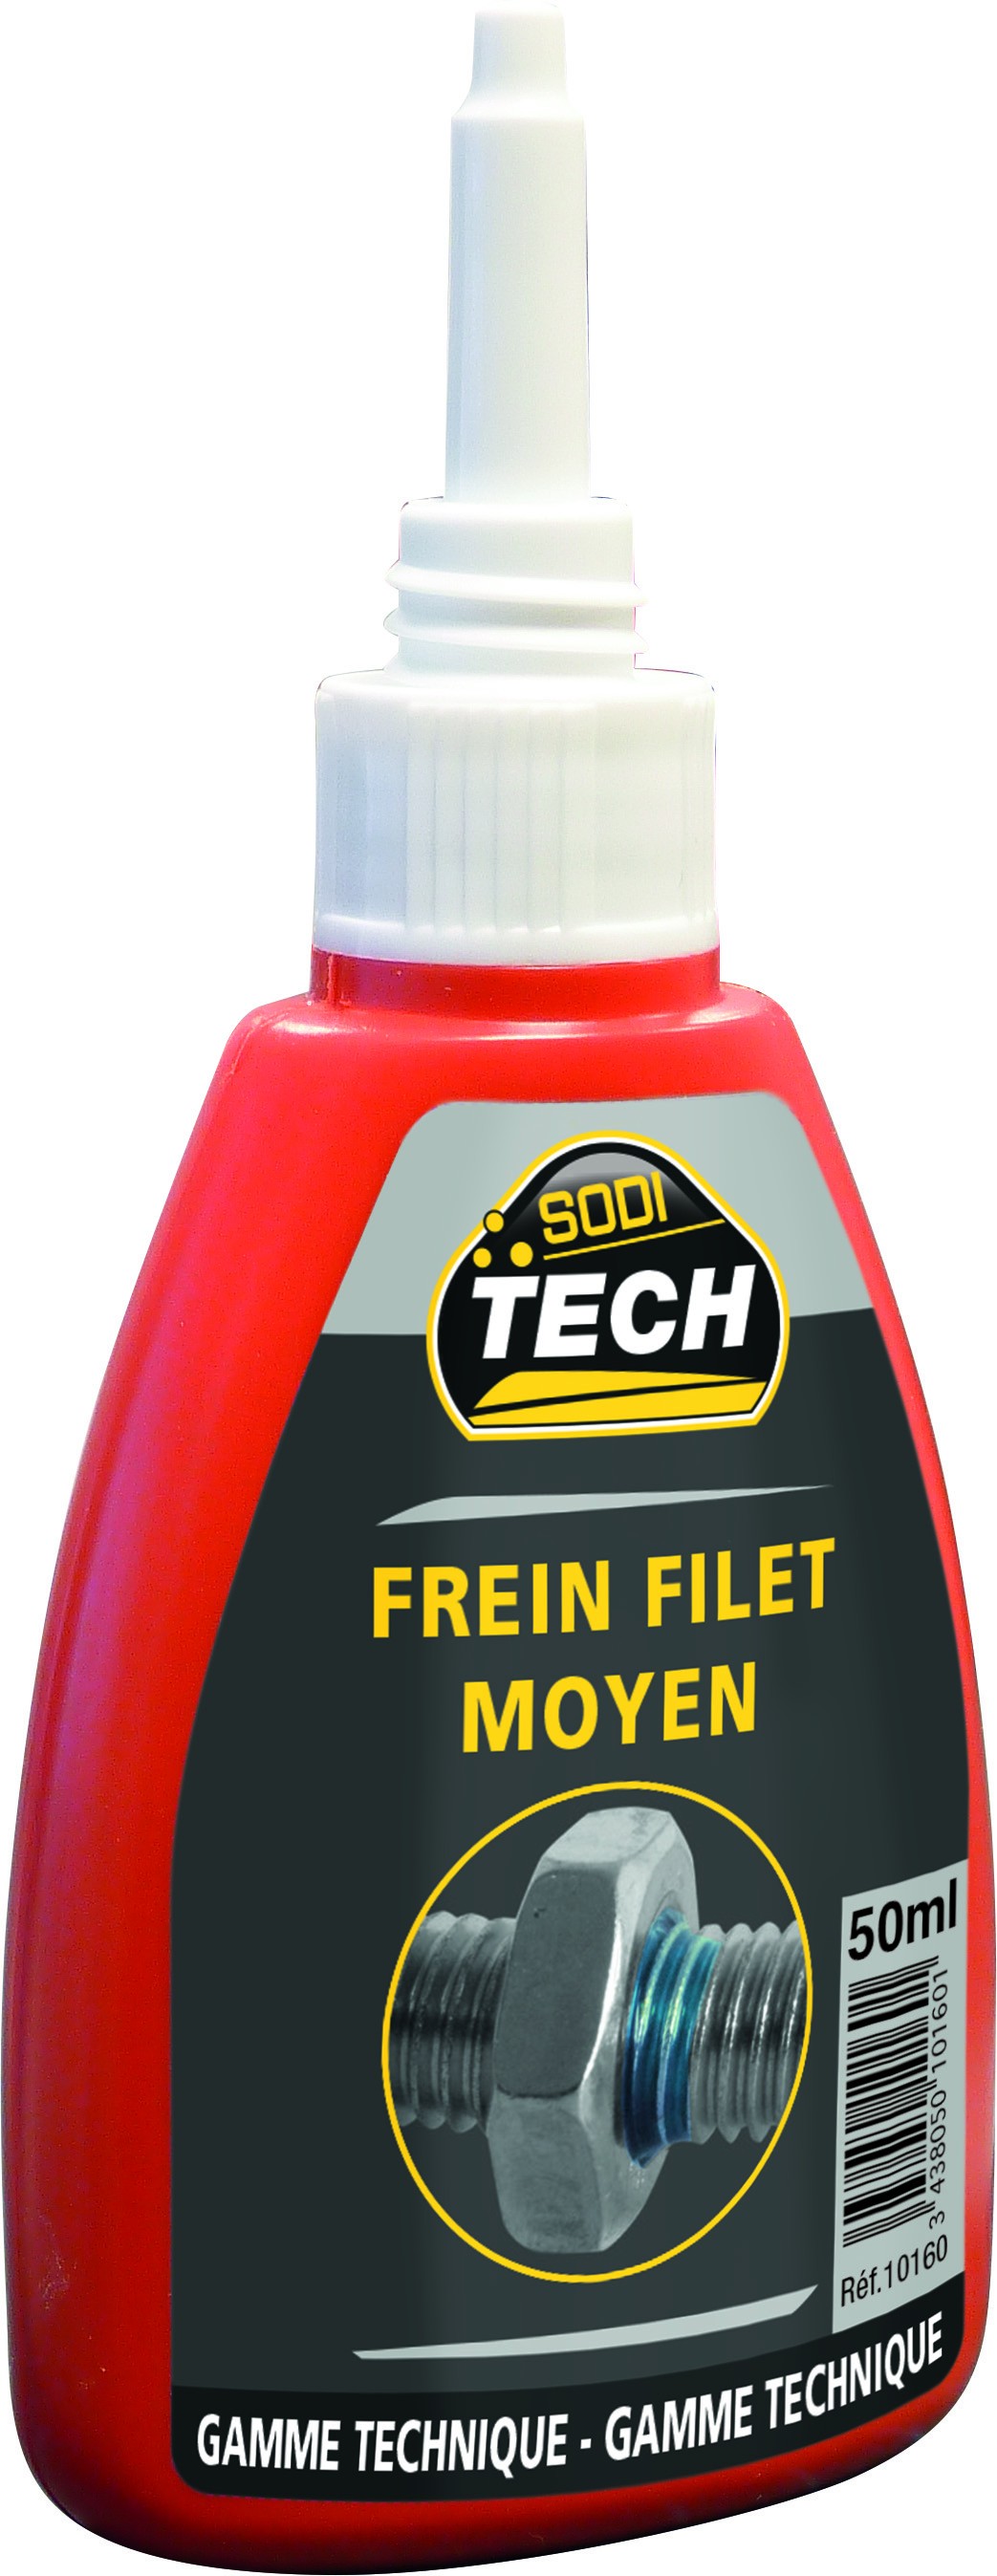 Frein filet Grip moyen 50ml flacon SODITECH - S10160 - MATOUTILS